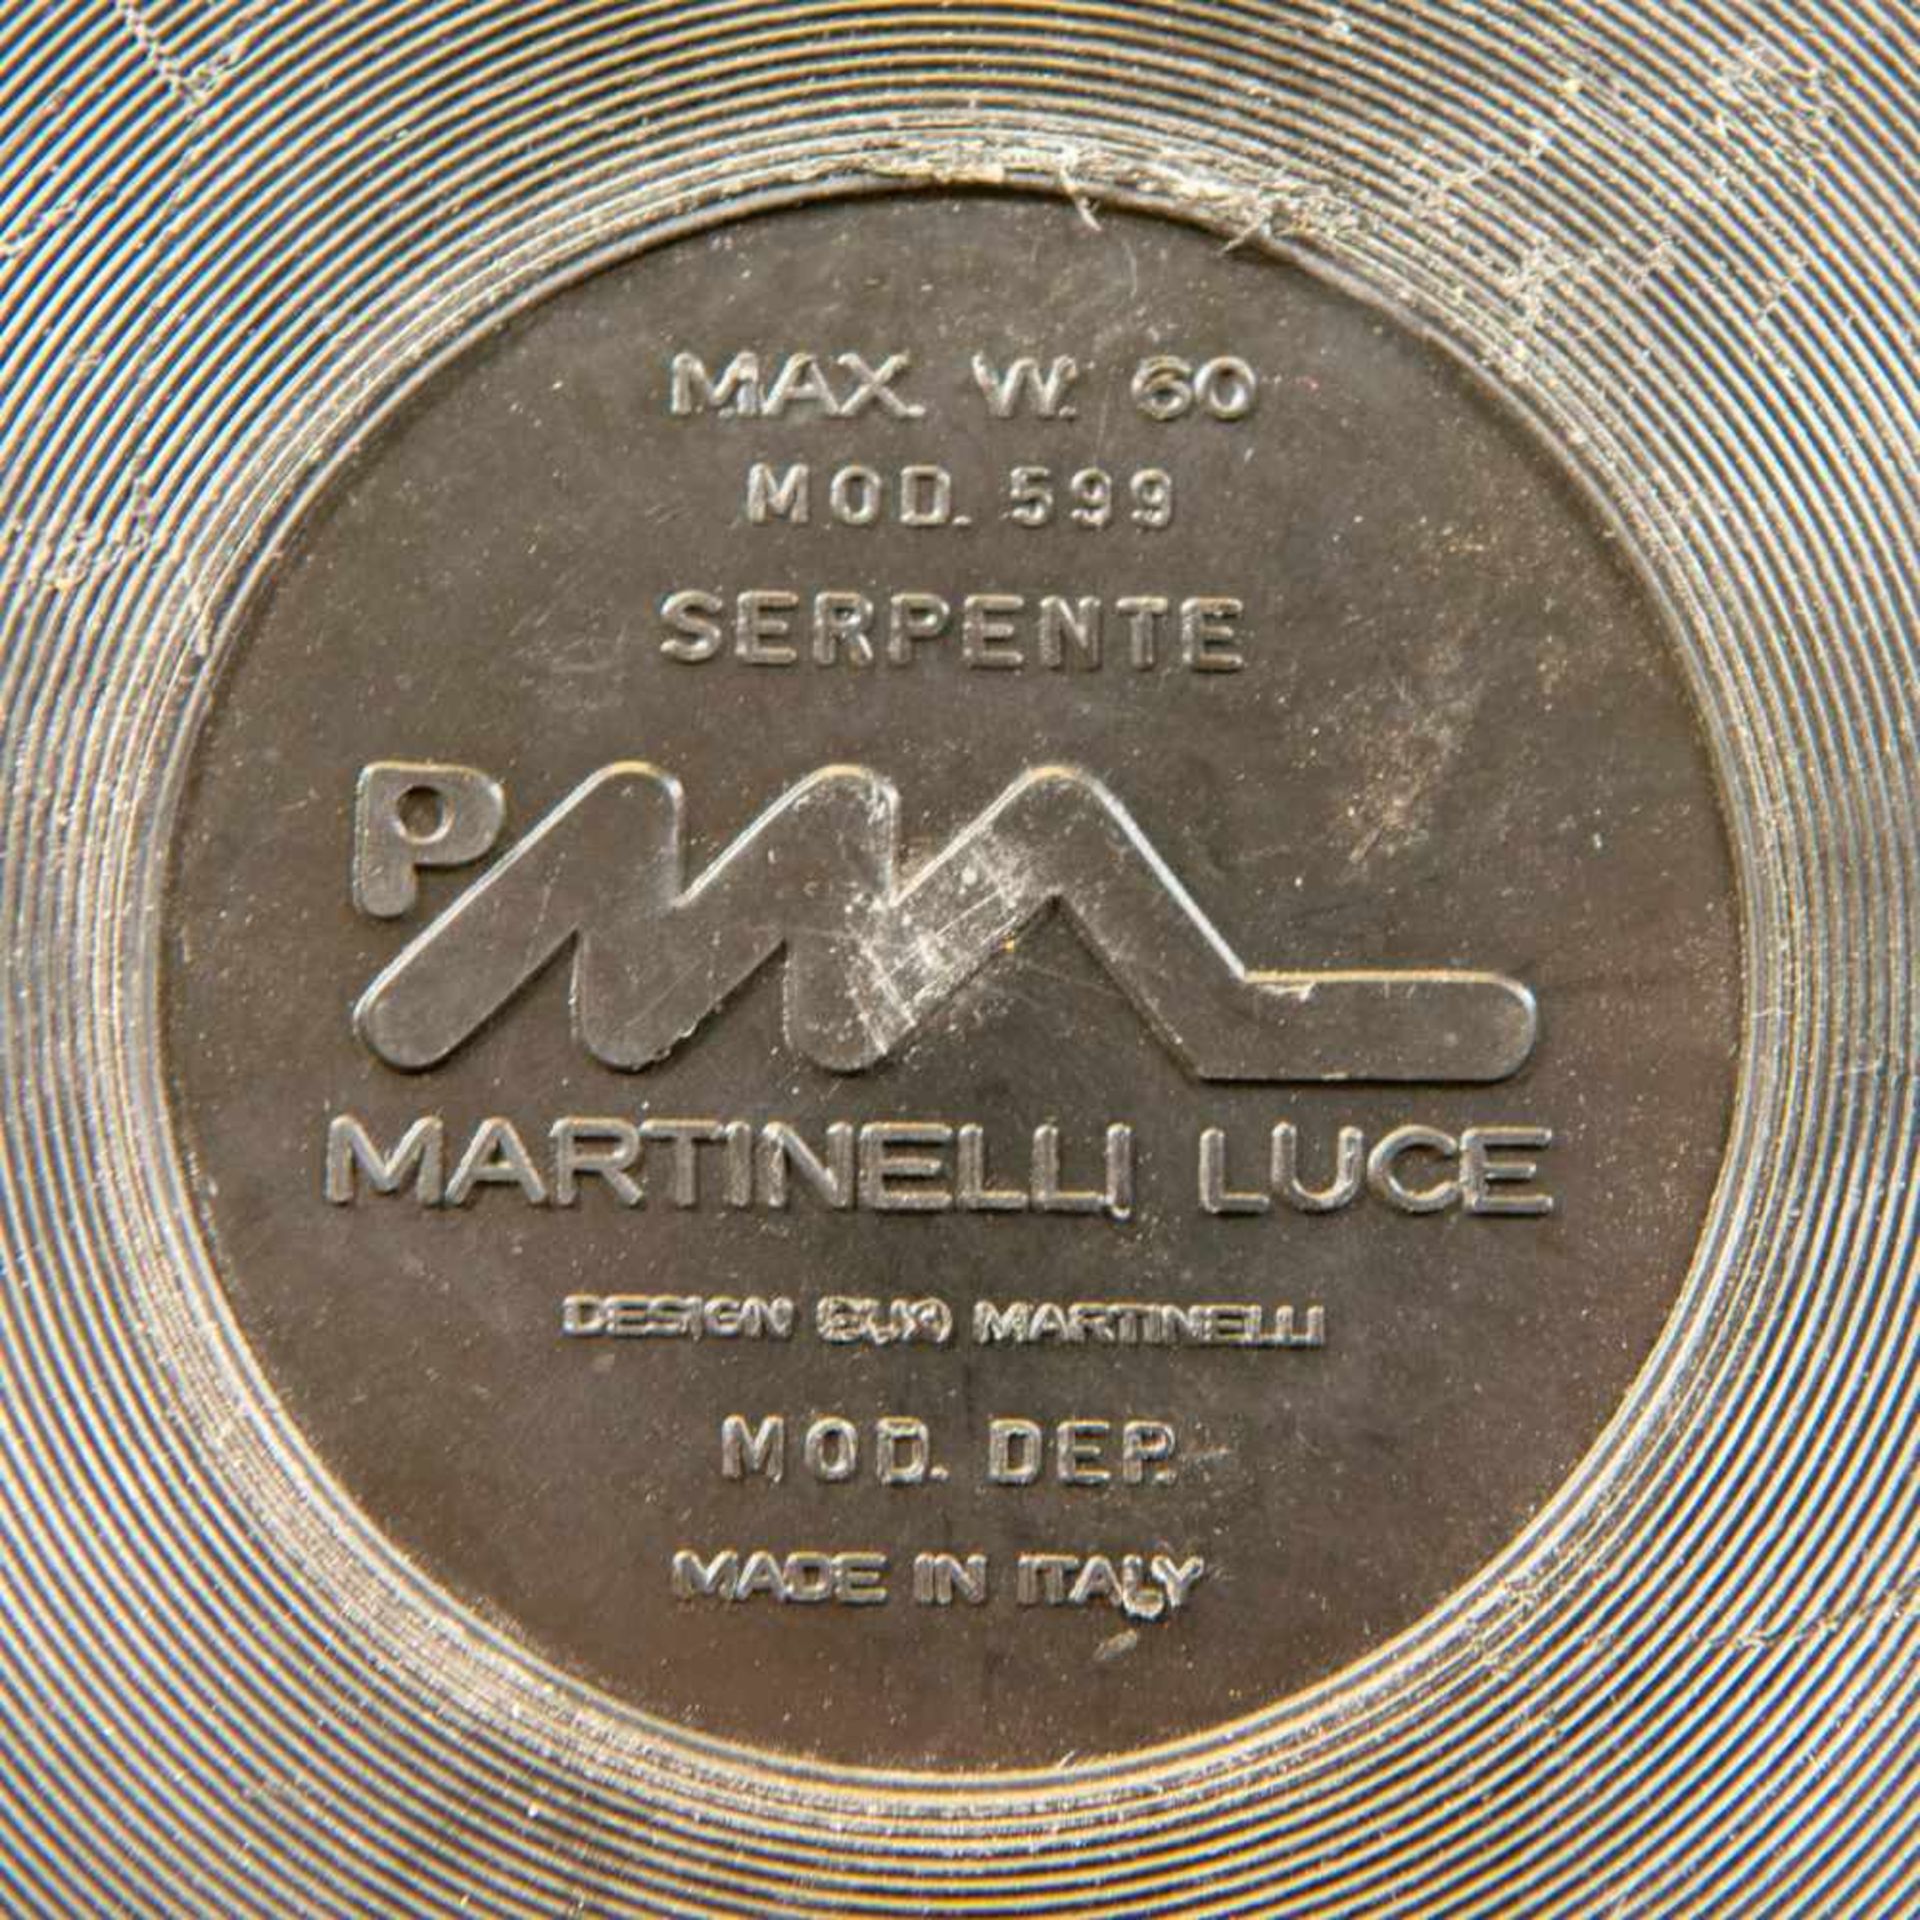 Elio MARTINELLI (1921-2004)Elio MARTINELLI (1921-2004), Serpente model 599 for Martinelli Luce. - Image 5 of 5